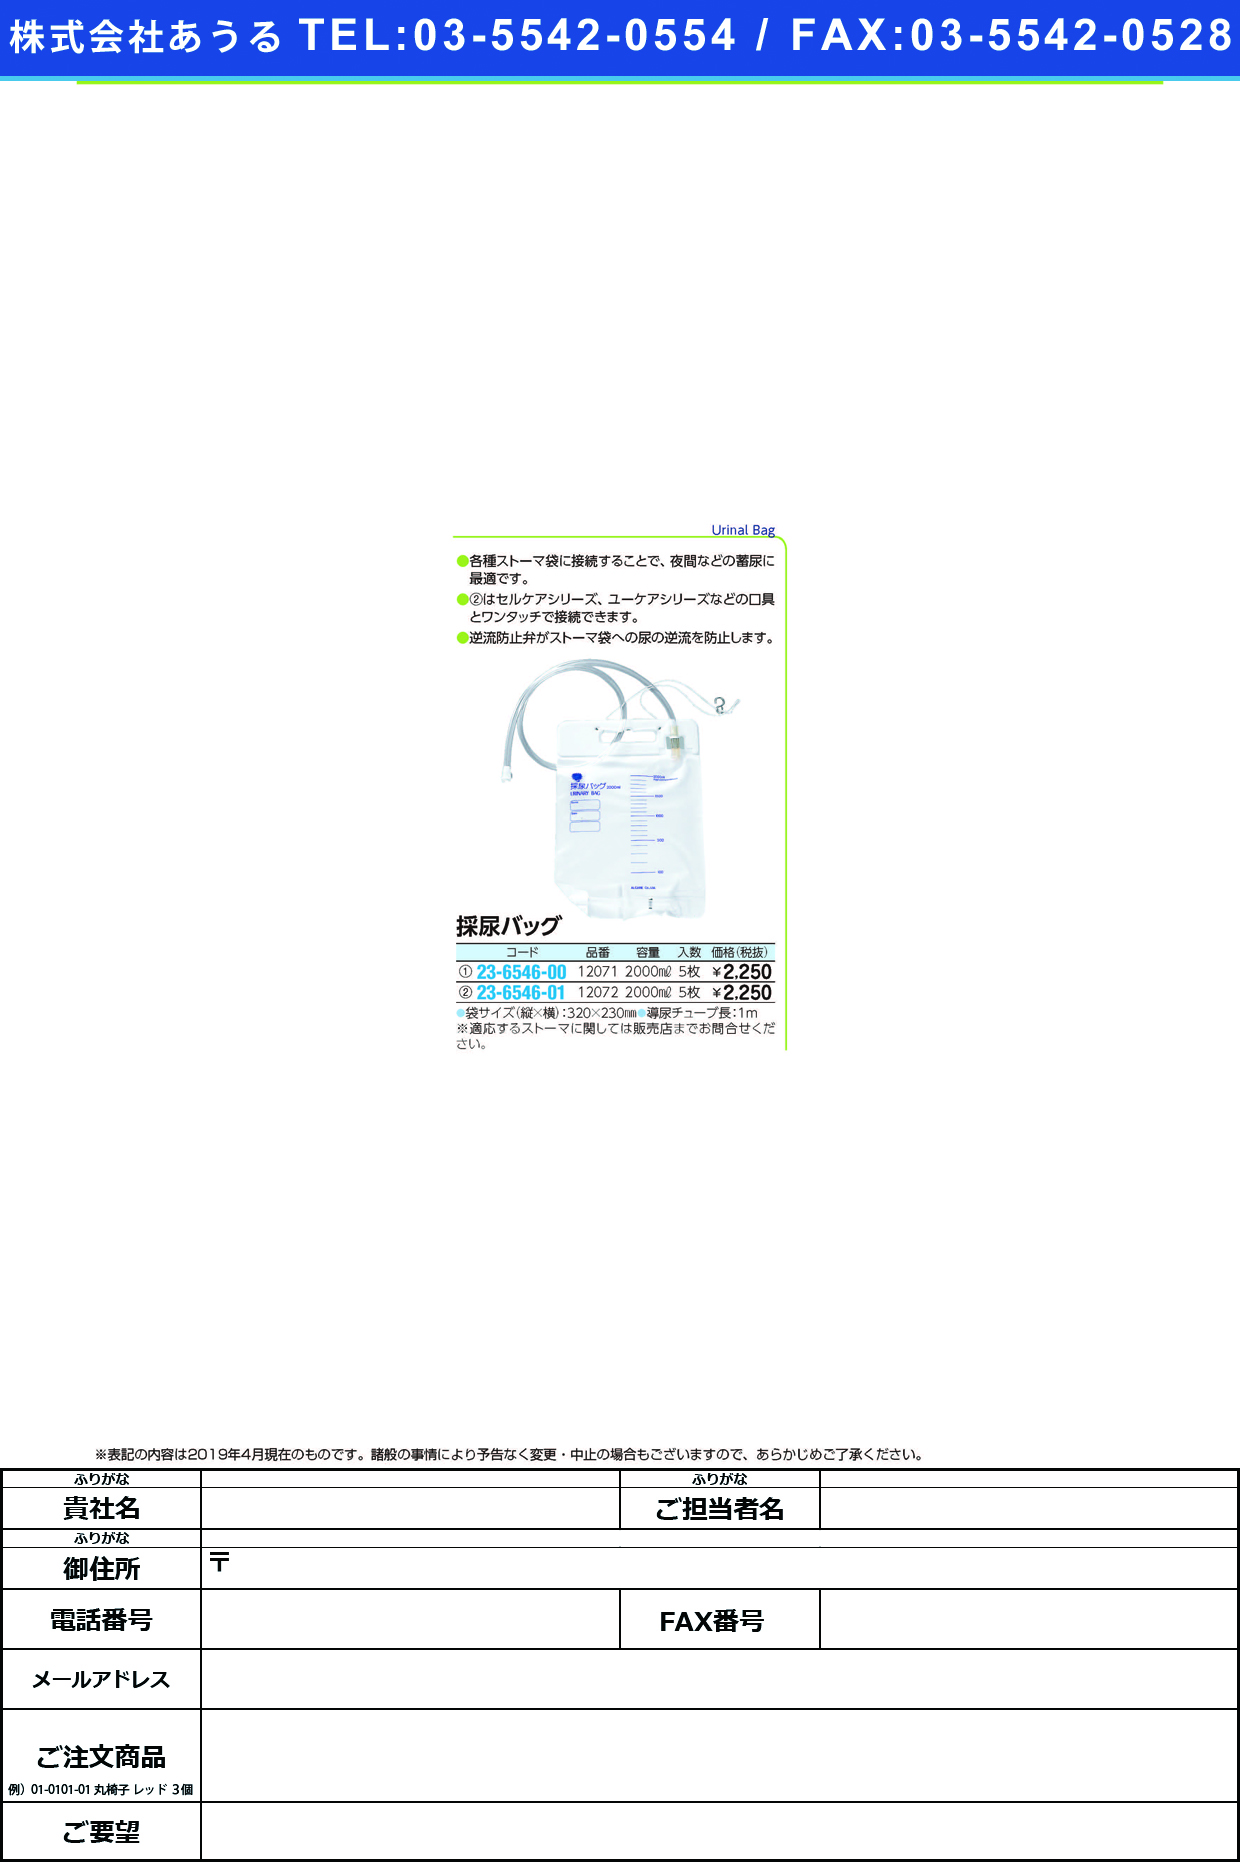 (23-6546-00)採尿バッグ 12071(5ﾏｲｲﾘ) ｻｲﾆｮｳﾊﾞｯｸﾞ(アルケア)【1箱単位】【2019年カタログ商品】